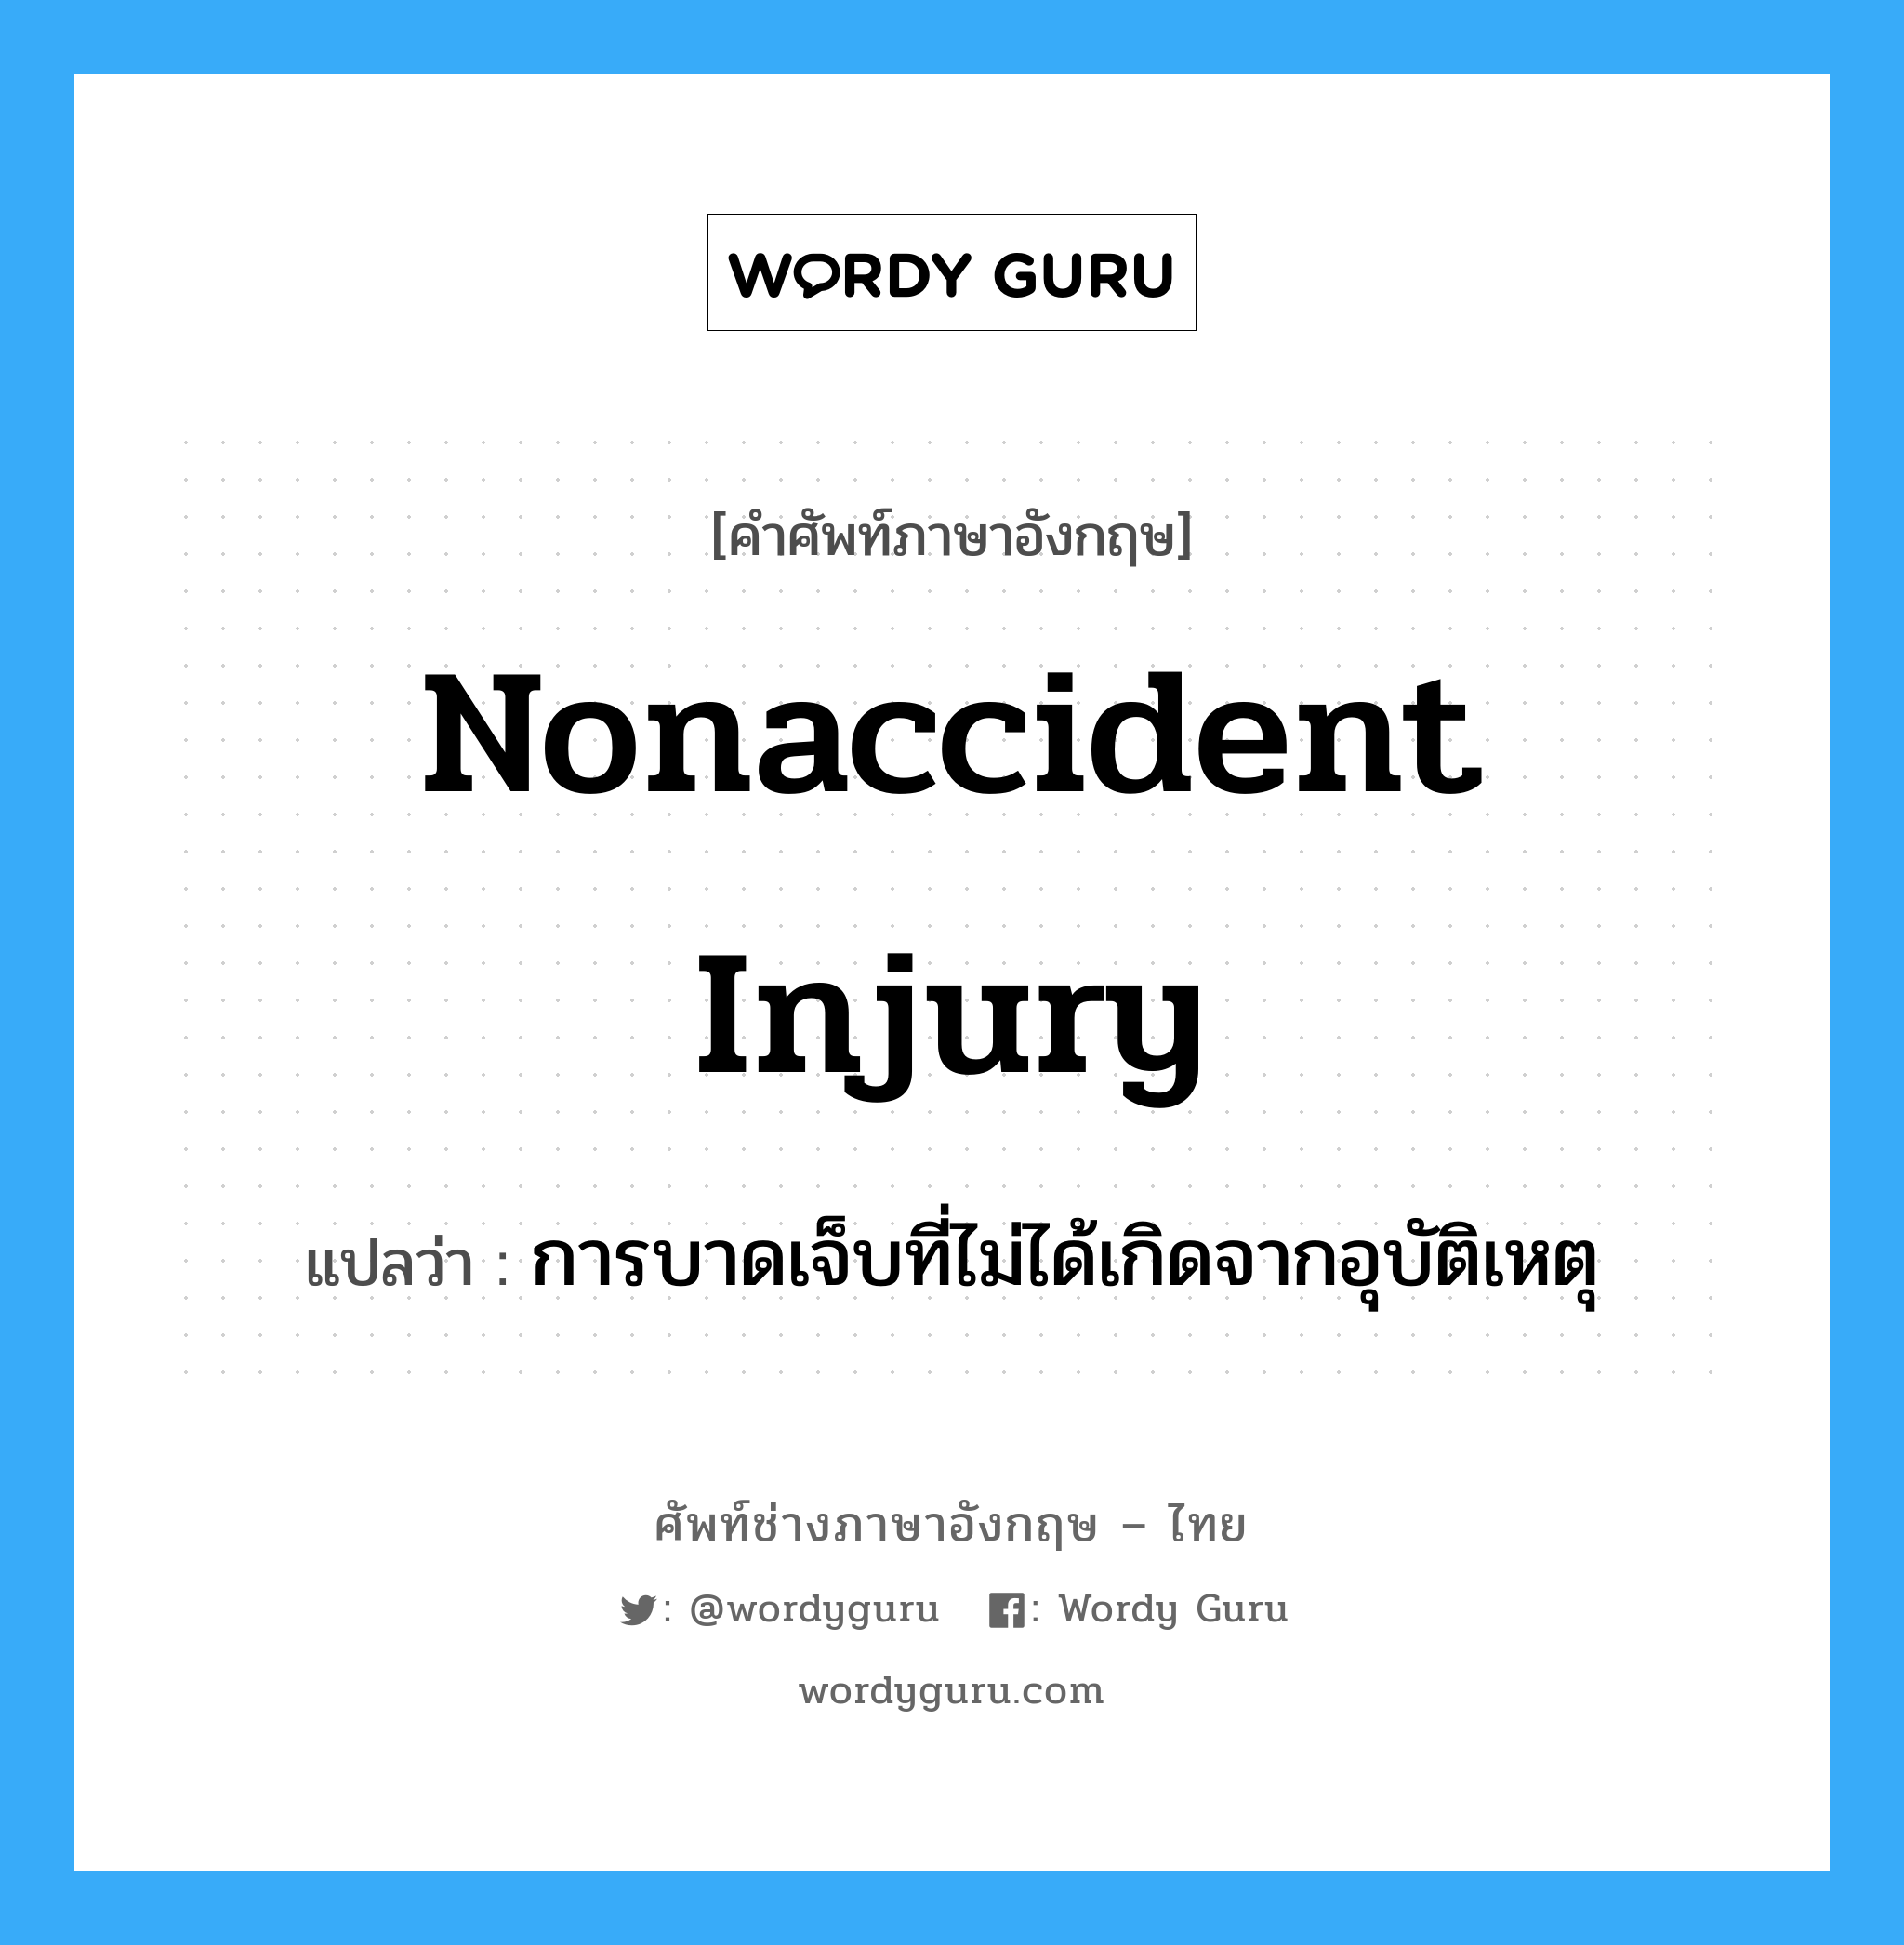 การบาดเจ็บที่ไม่ได้เกิดจากอุบัติเหตุ ภาษาอังกฤษ?, คำศัพท์ช่างภาษาอังกฤษ - ไทย การบาดเจ็บที่ไม่ได้เกิดจากอุบัติเหตุ คำศัพท์ภาษาอังกฤษ การบาดเจ็บที่ไม่ได้เกิดจากอุบัติเหตุ แปลว่า Nonaccident Injury